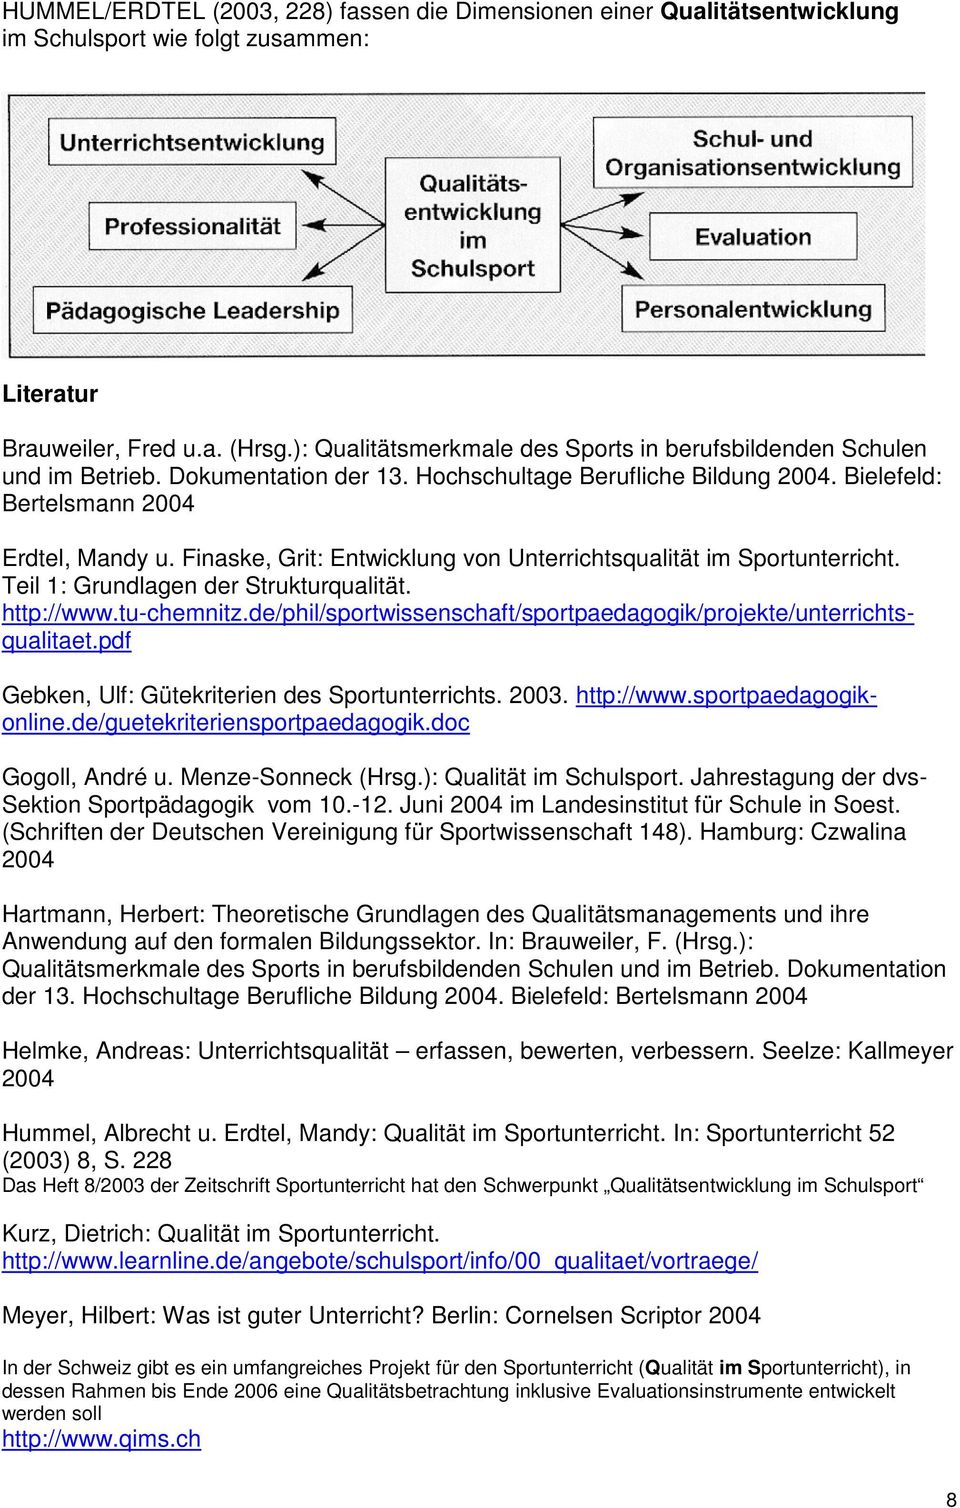 Finaske, Grit: Entwicklung von Unterrichtsqualität im Sportunterricht. Teil 1: Grundlagen der Strukturqualität. http://www.tu-chemnitz.